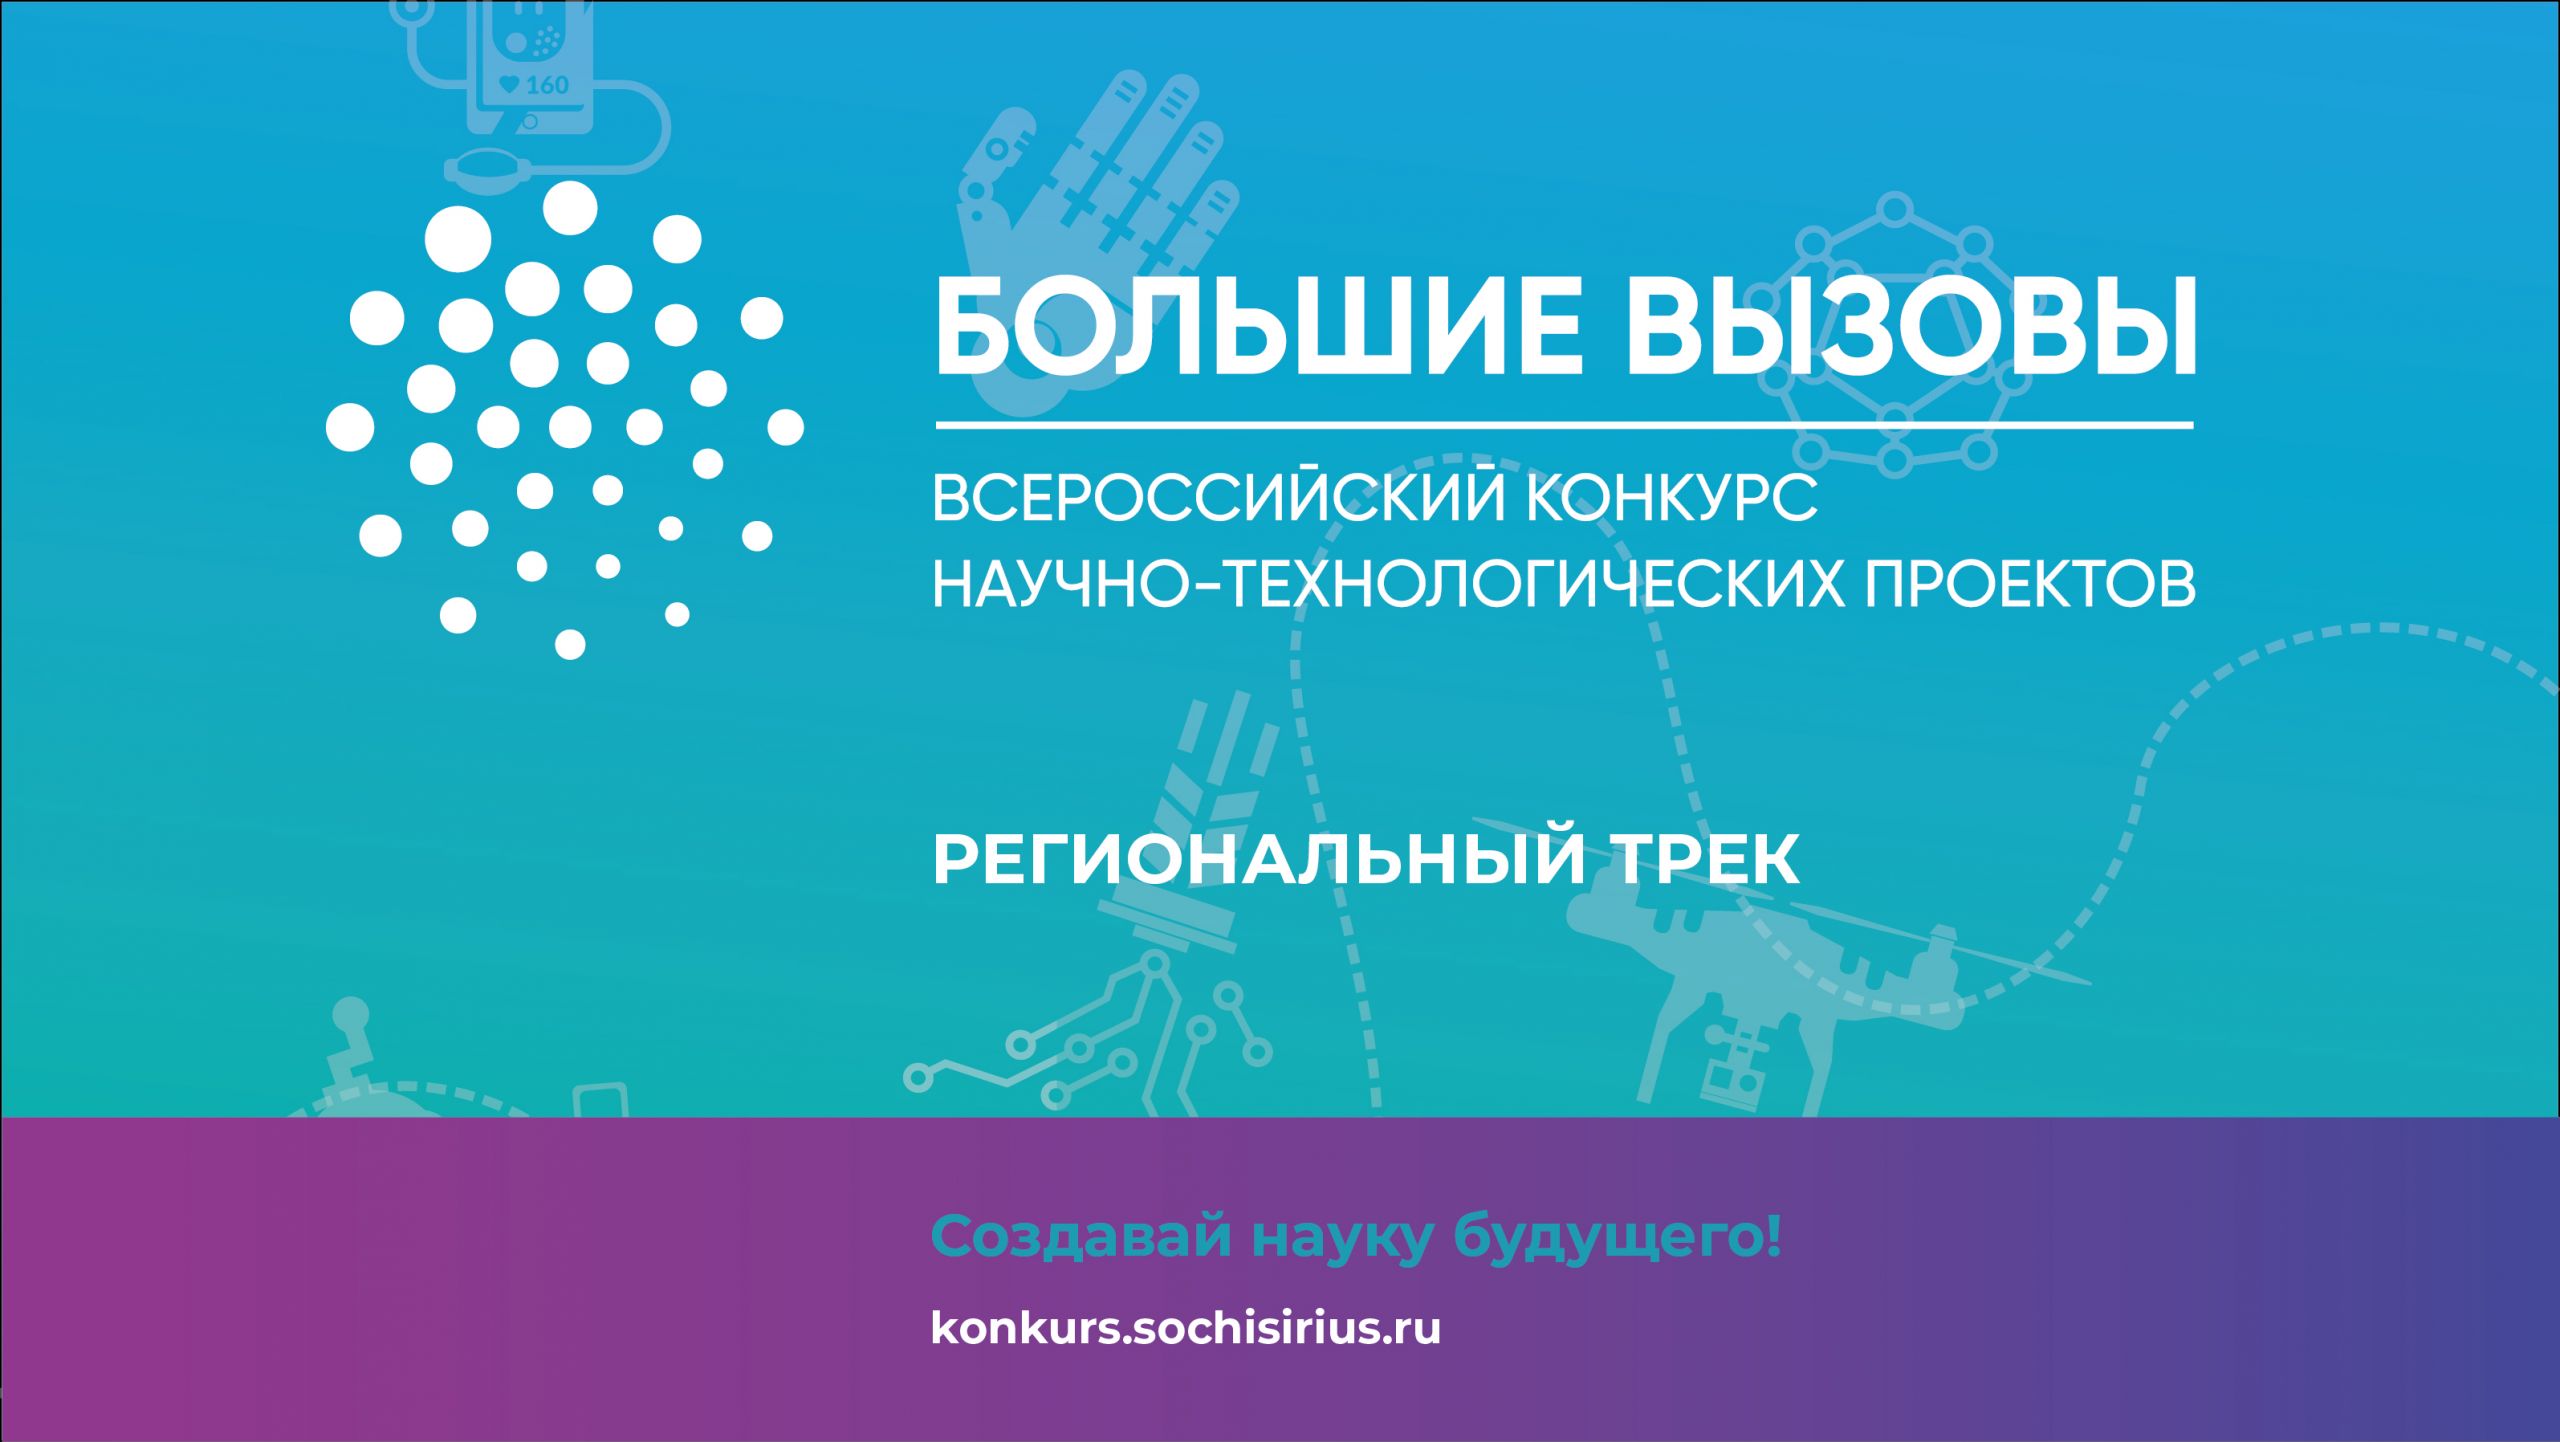 Начался приём заявок на Всероссийский конкурс «Большие вызовы»